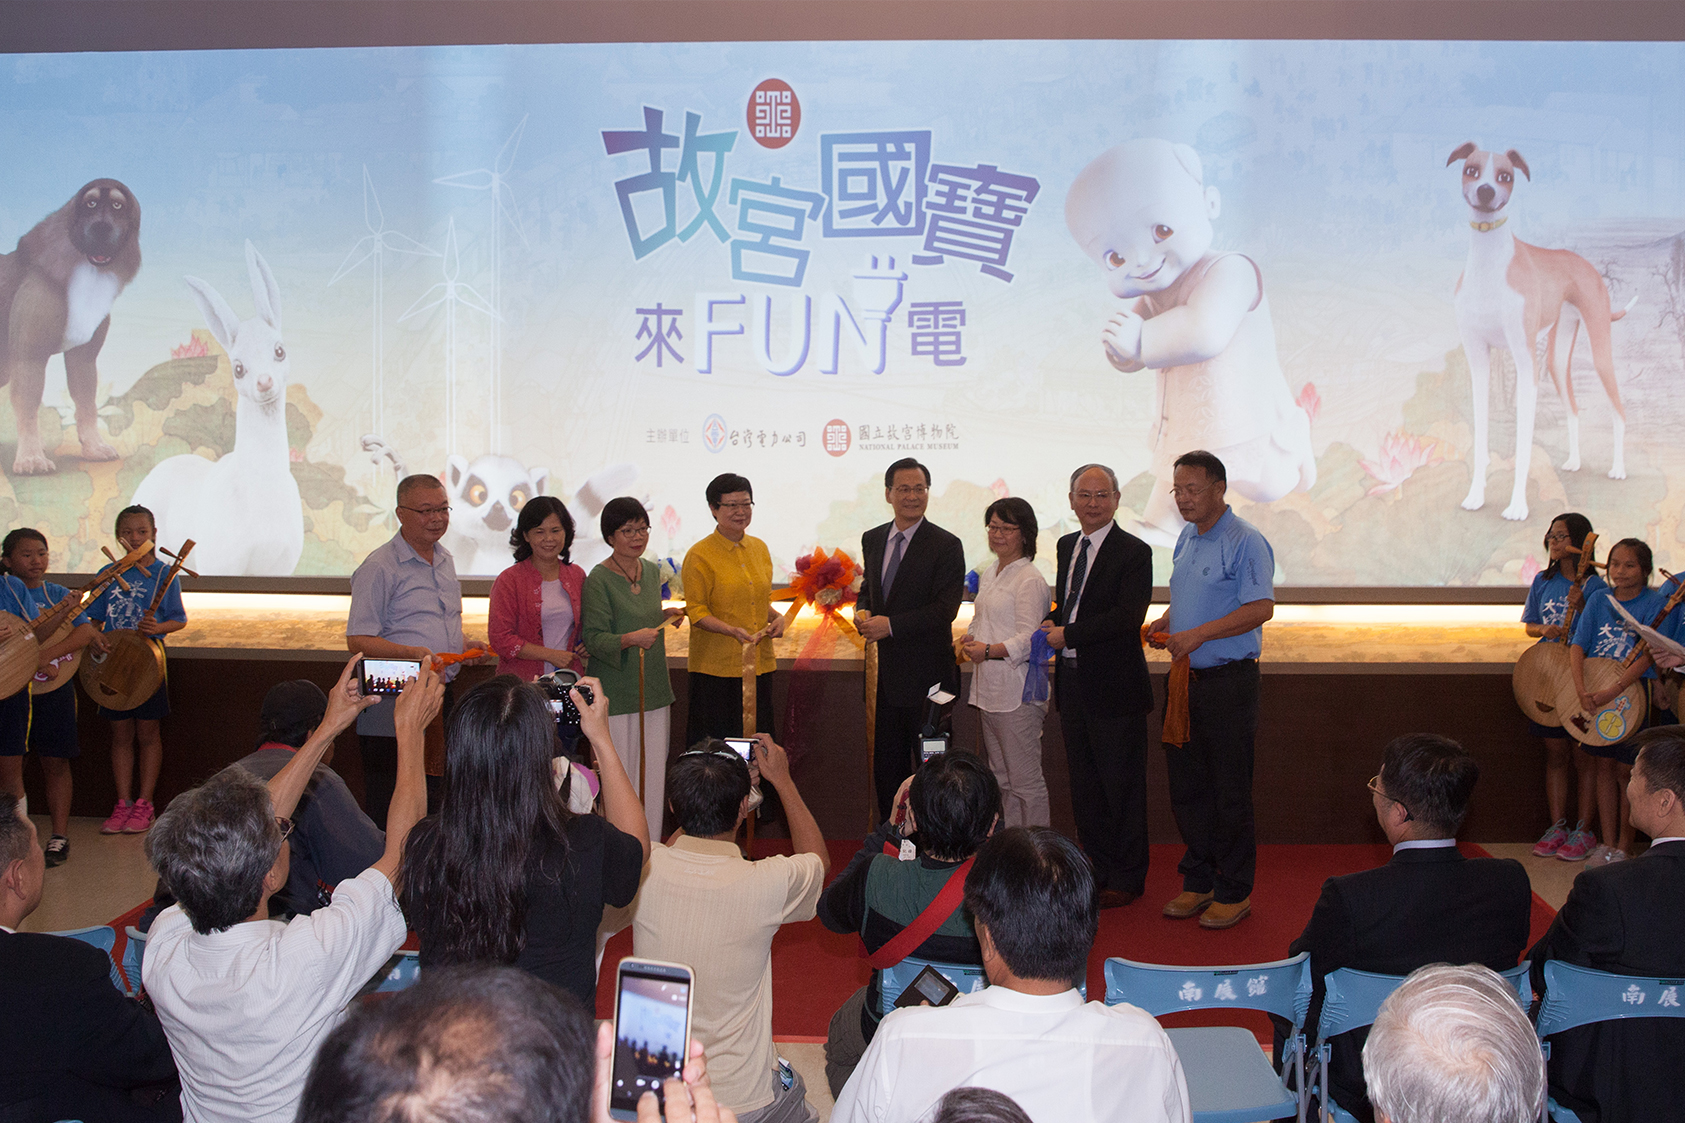 NPM Director Fung Mingchu and Taipower Company Chairman Huang Zhongqiu, et al. unveil the exhibition